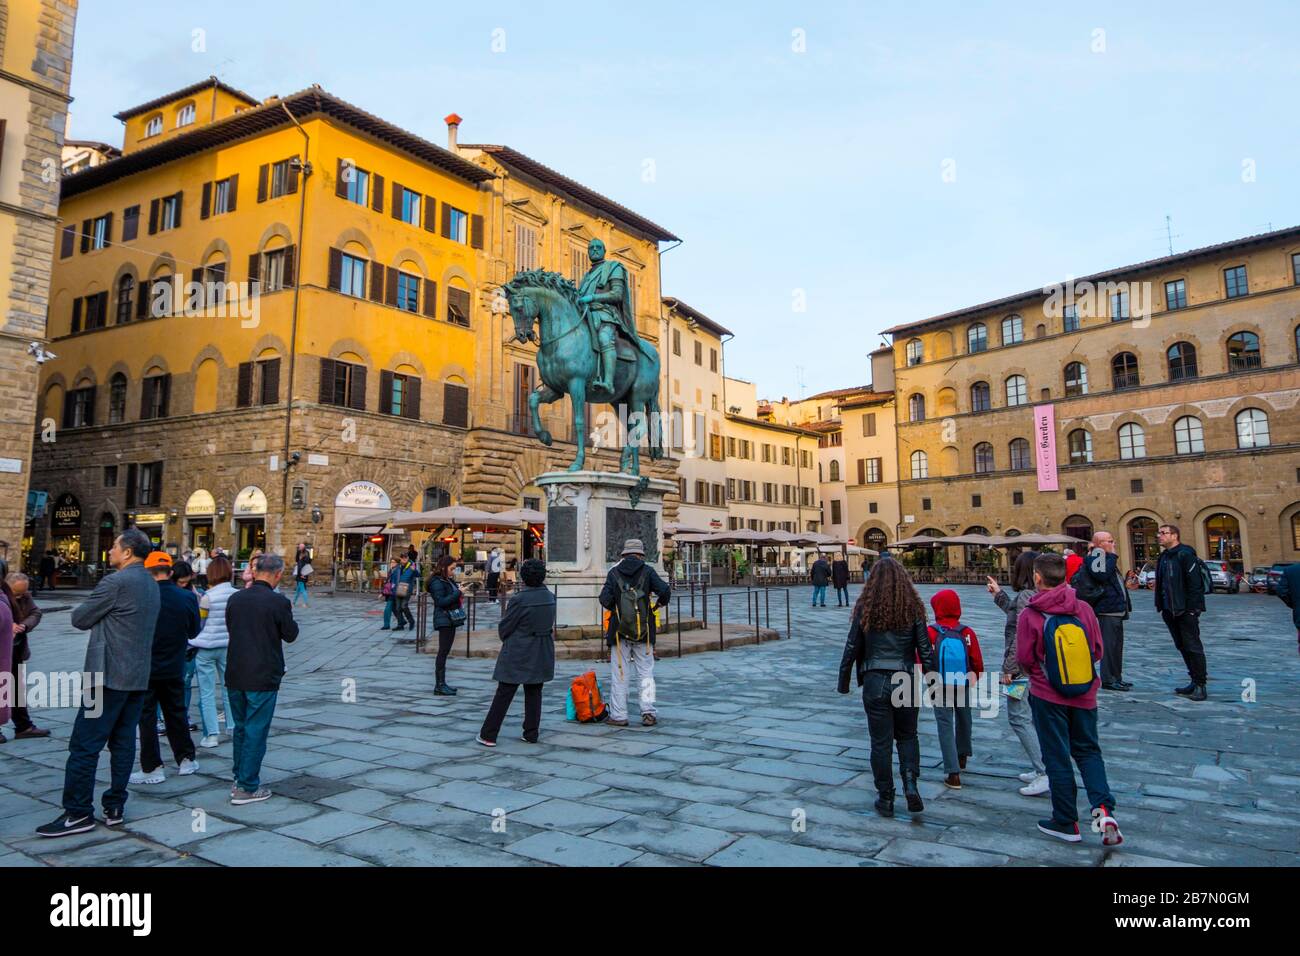 Statua equestre di Cosimo I de' Medici, Piazza della Signoria, centro storico, Florence, Italy Stock Photo